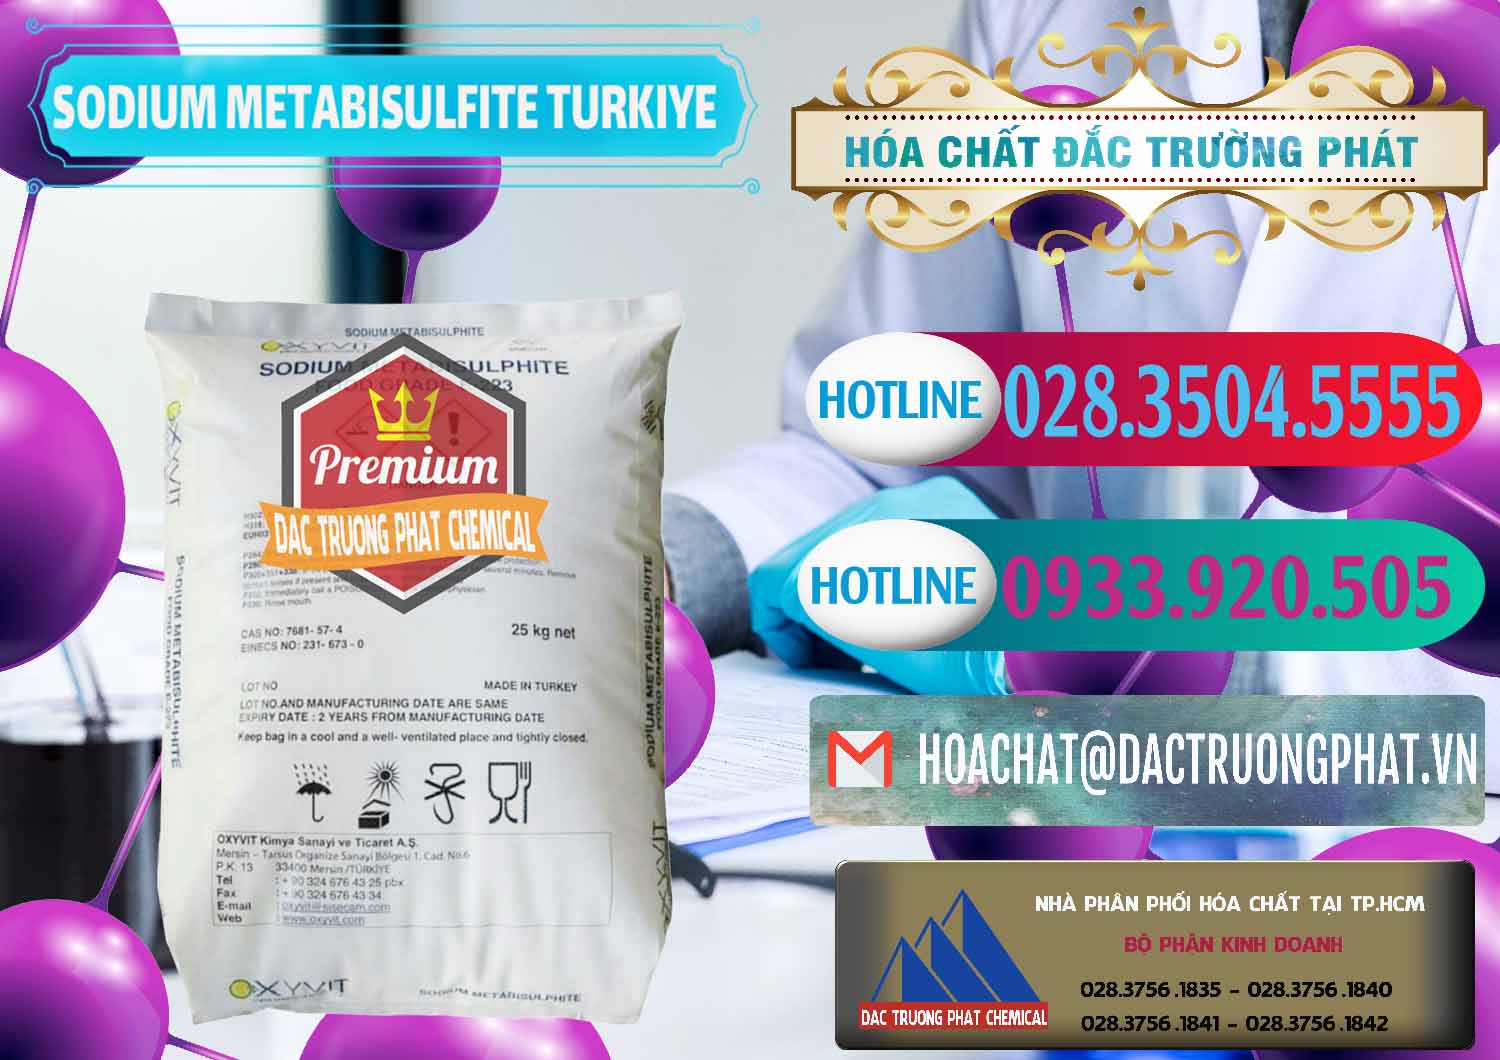 Chuyên cung cấp & bán Sodium Metabisulfite - NA2S2O5 Food Grade E-223 Thổ Nhĩ Kỳ Turkey - 0413 - Nơi chuyên nhập khẩu và phân phối hóa chất tại TP.HCM - truongphat.vn